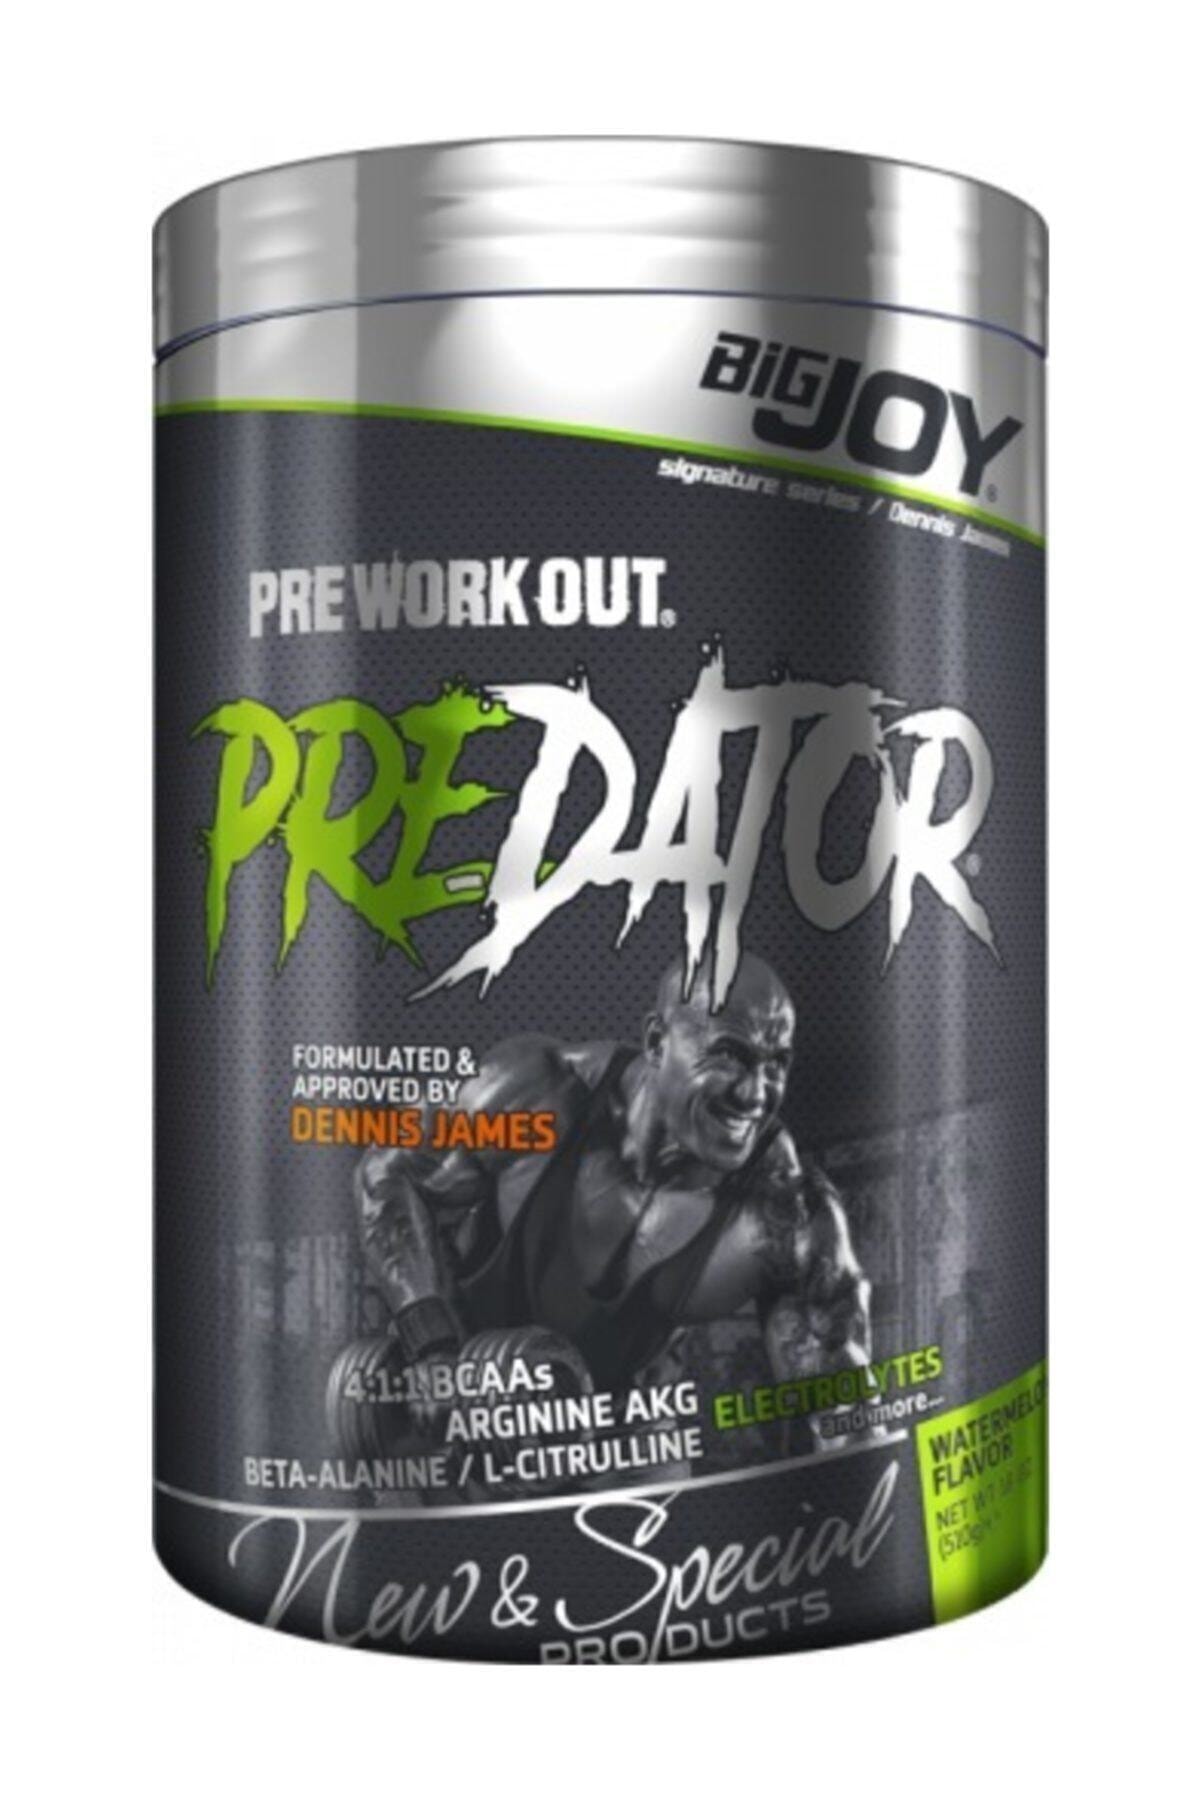  Bigjoy Pre-workout Predator 510 gr - Orman Meyveleri BİGJOY045 